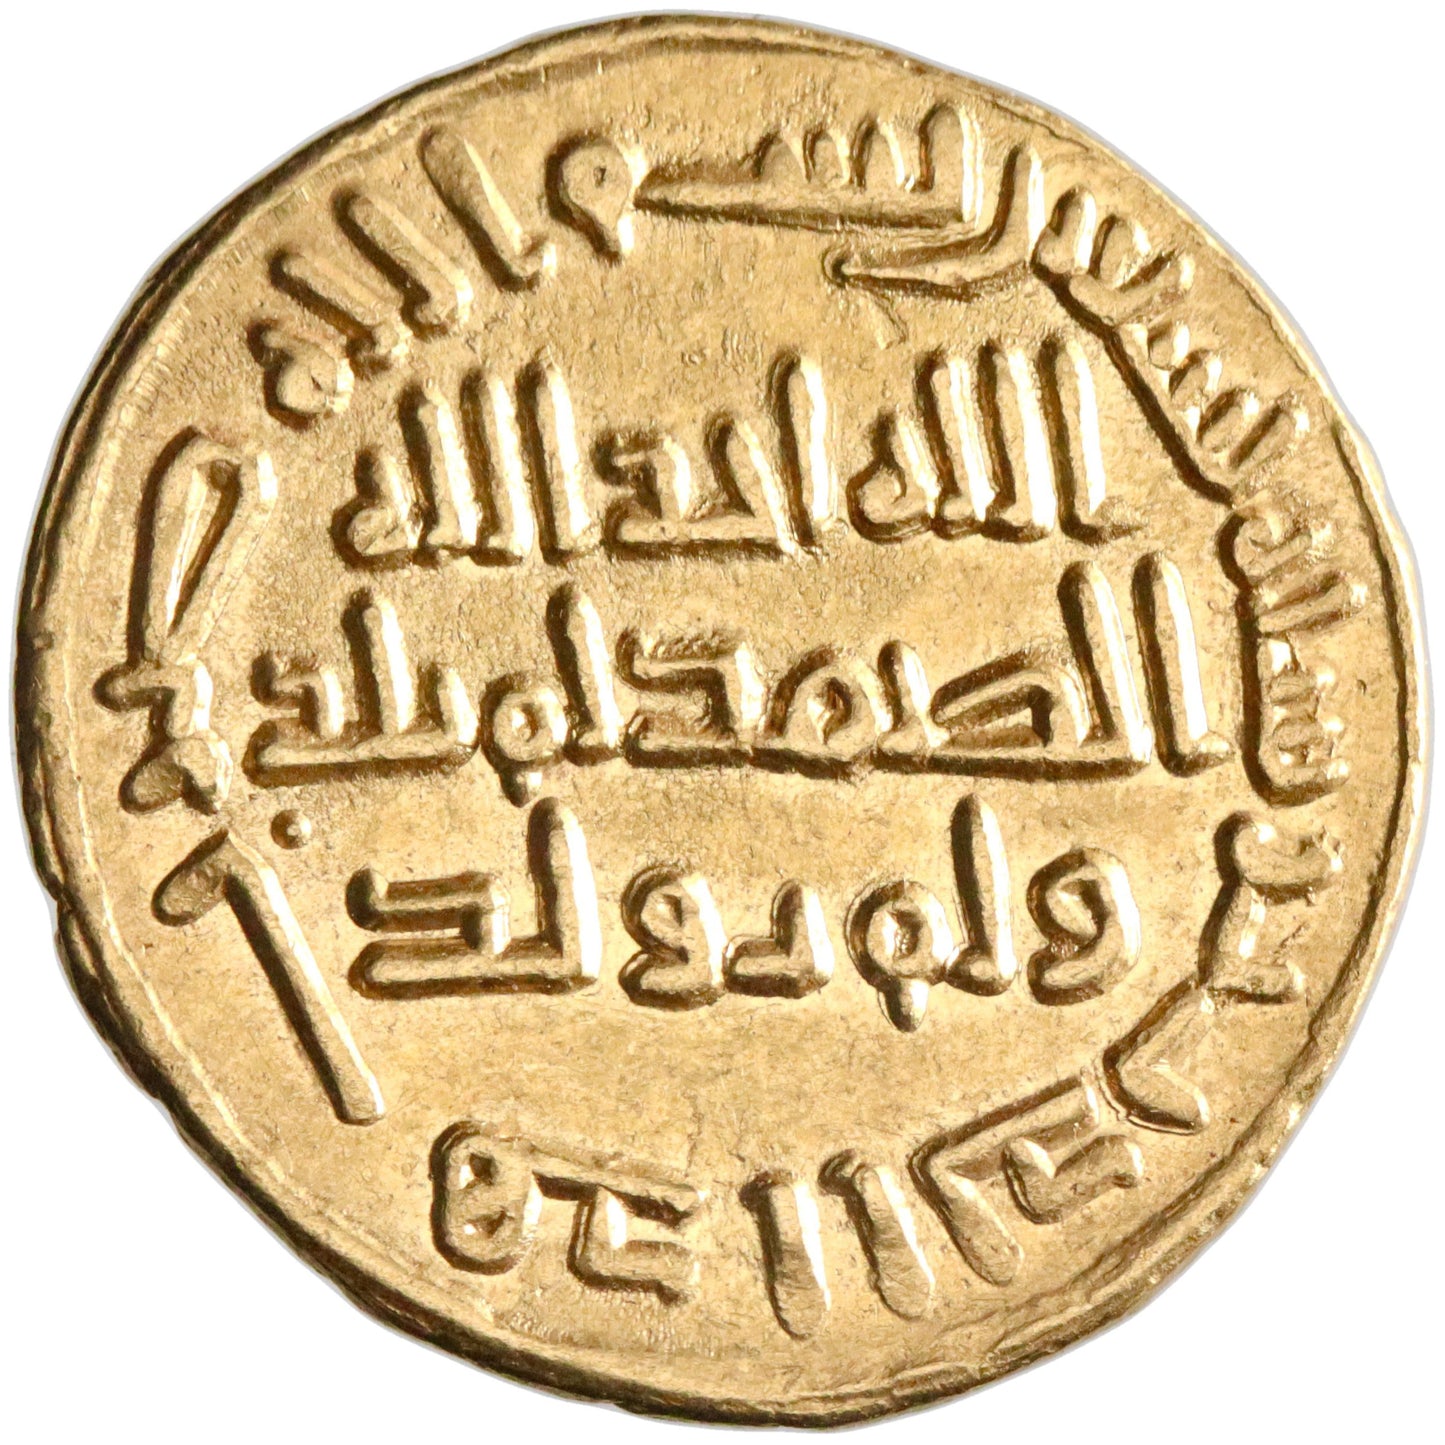 Umayyad, al-Walid I ibn 'Abd al-Malik, gold dinar, AH 90